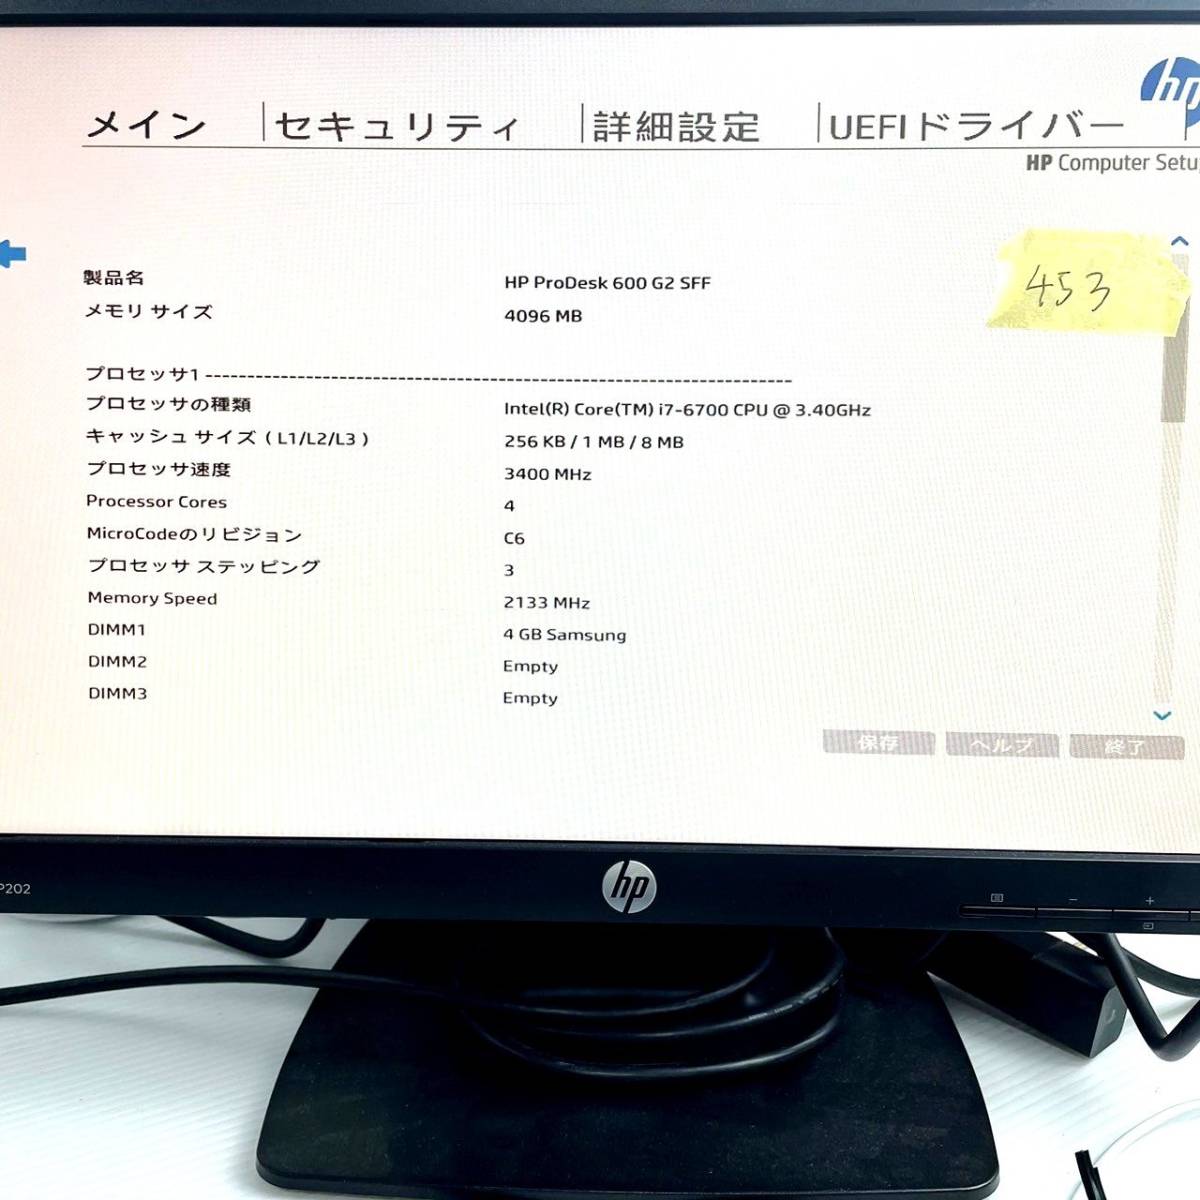 453【通電OK】 HP ProDesk 600 G2 SFF L1Q39AV TPC-F079-SF Windows 10 Pro intel Core i7-6700 CPU @ 3.40GHz デスクトップ PC パソコン_画像7